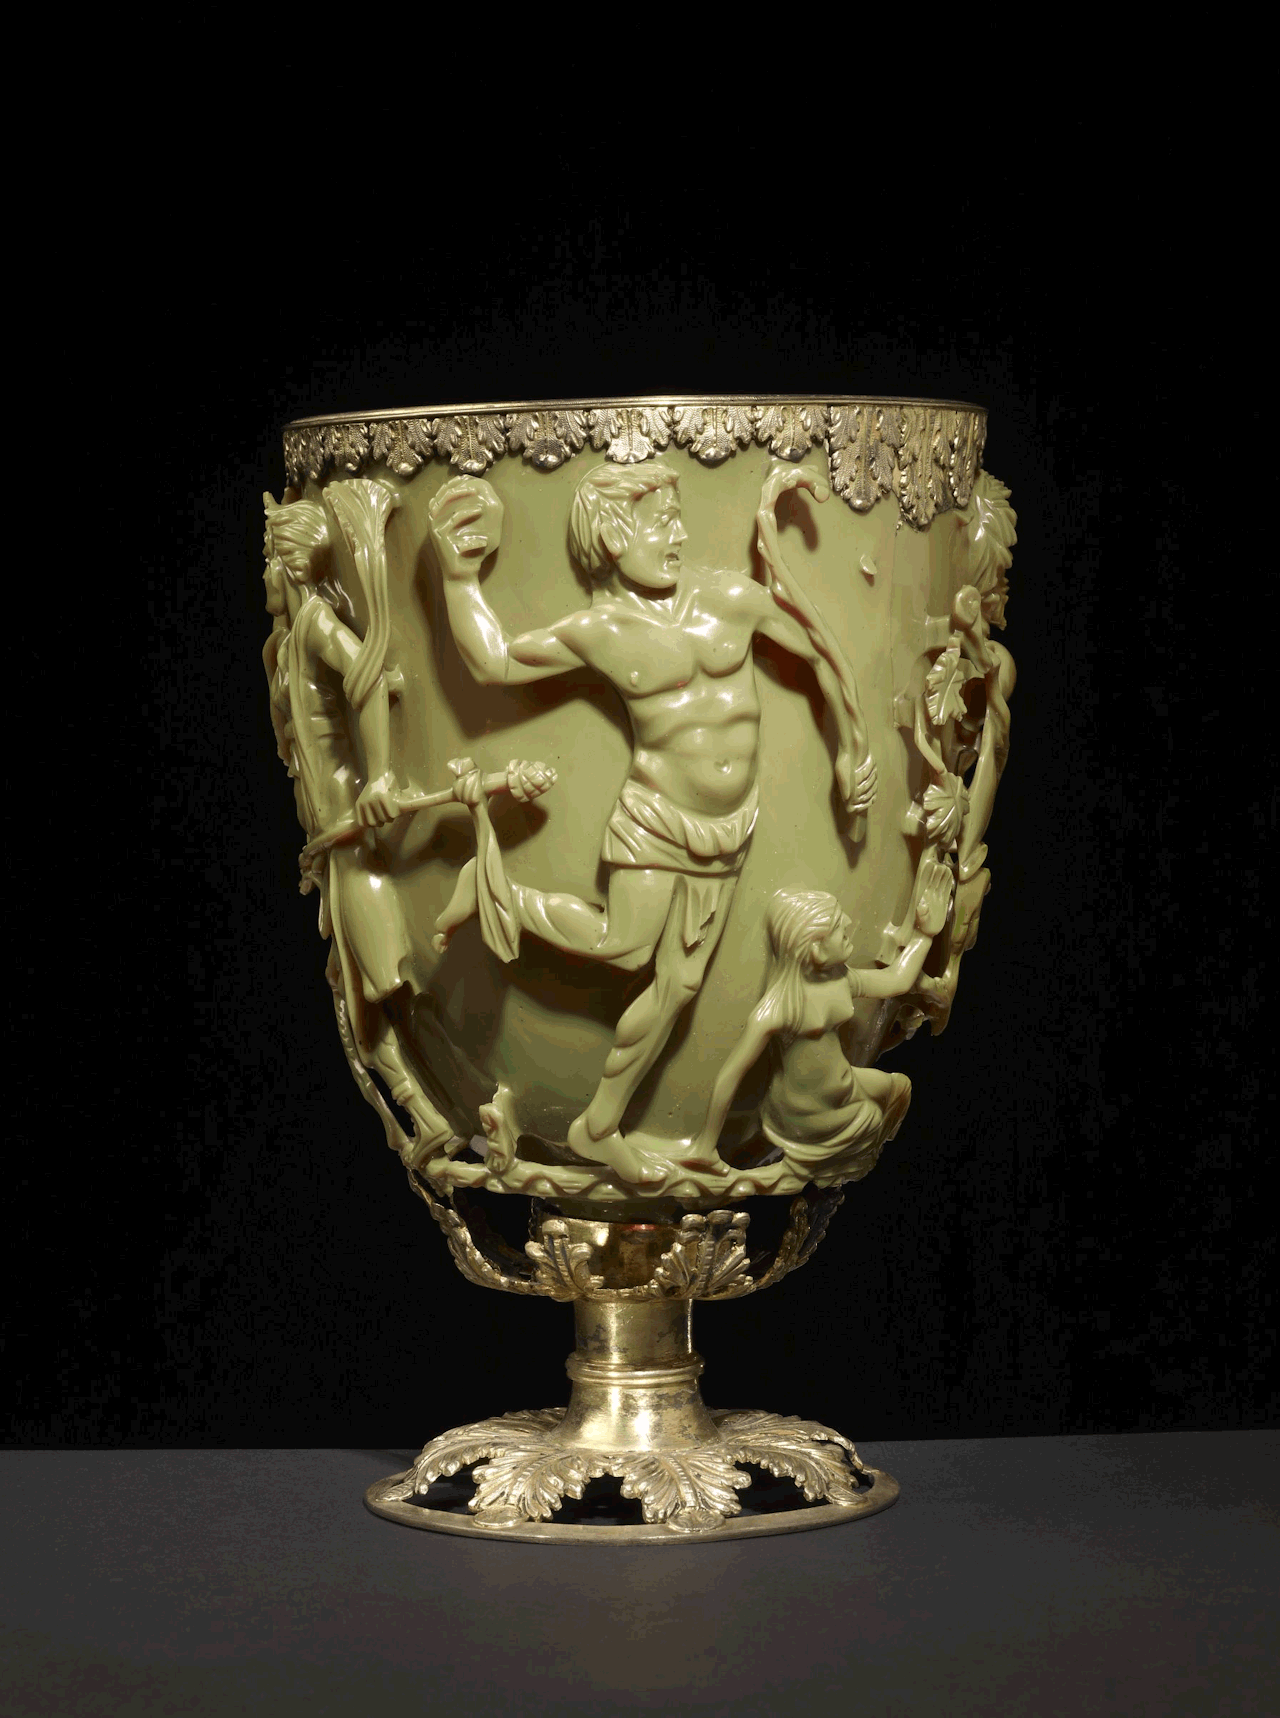 Roman Lycurgus Cup je 1,600 godina star rimski kalež od žada. Kad u njega stavite izvor svjetlosti, on čarobno mijenja boju. Djeluje žuto zeleno kad je osvijetljen sprijeda, a krvavo crven kad je osvijetljen straga ili iznutra.